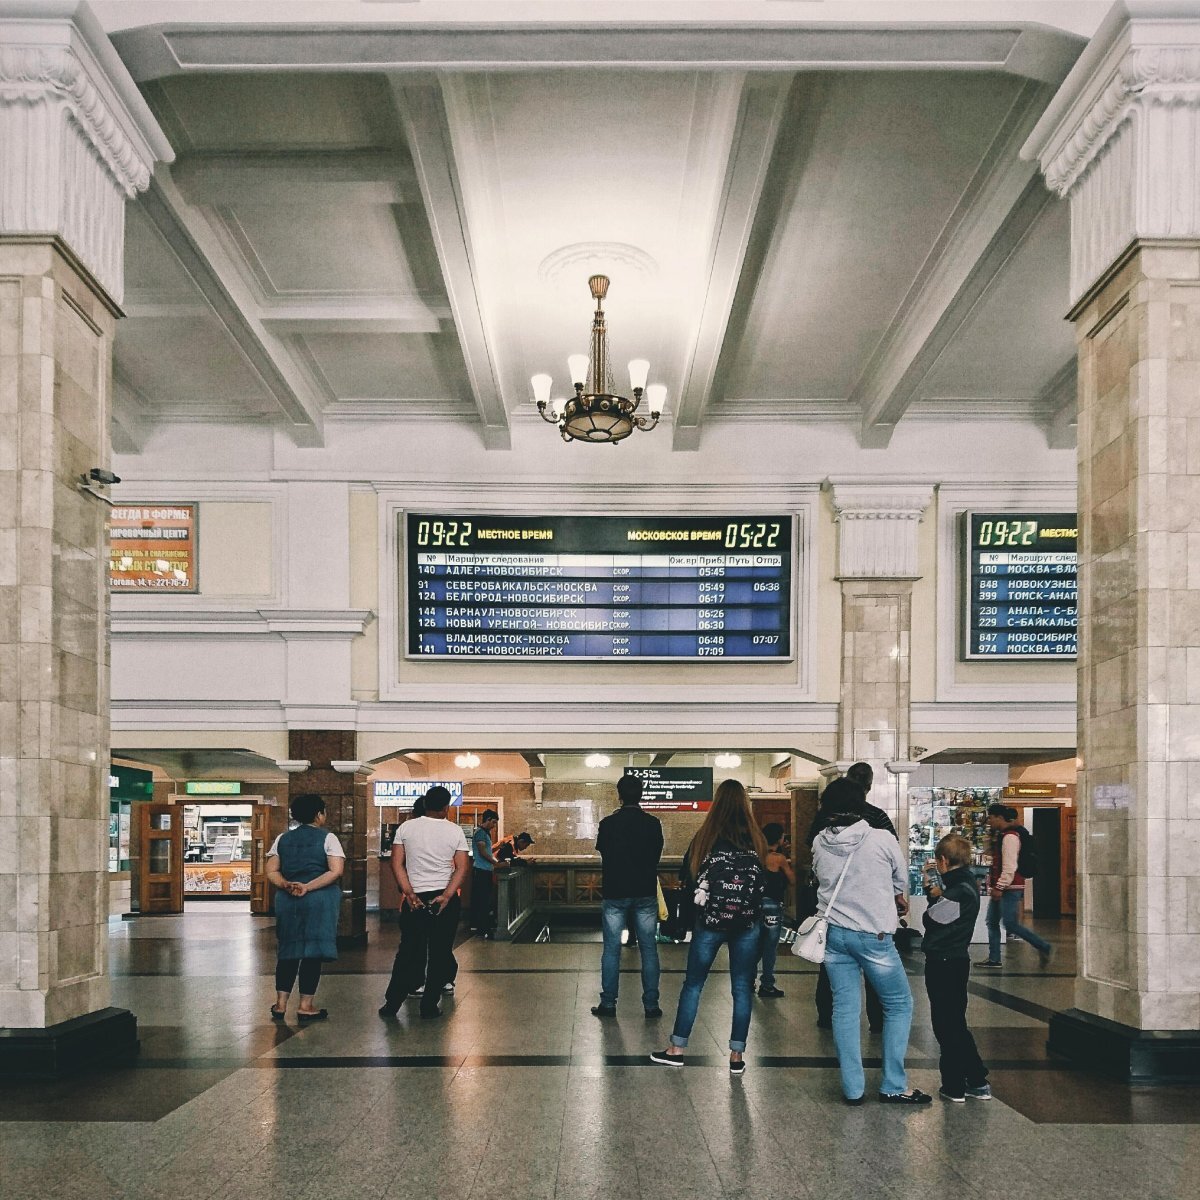 Центральный вокзал телефон. Вокзал Новосибирск главный внутри. Новосибирск ЖД вокзал внутри. Новосибирский главный вокзал главный Новосибирск. ЖД вокзал Новосибирск главный внутри.